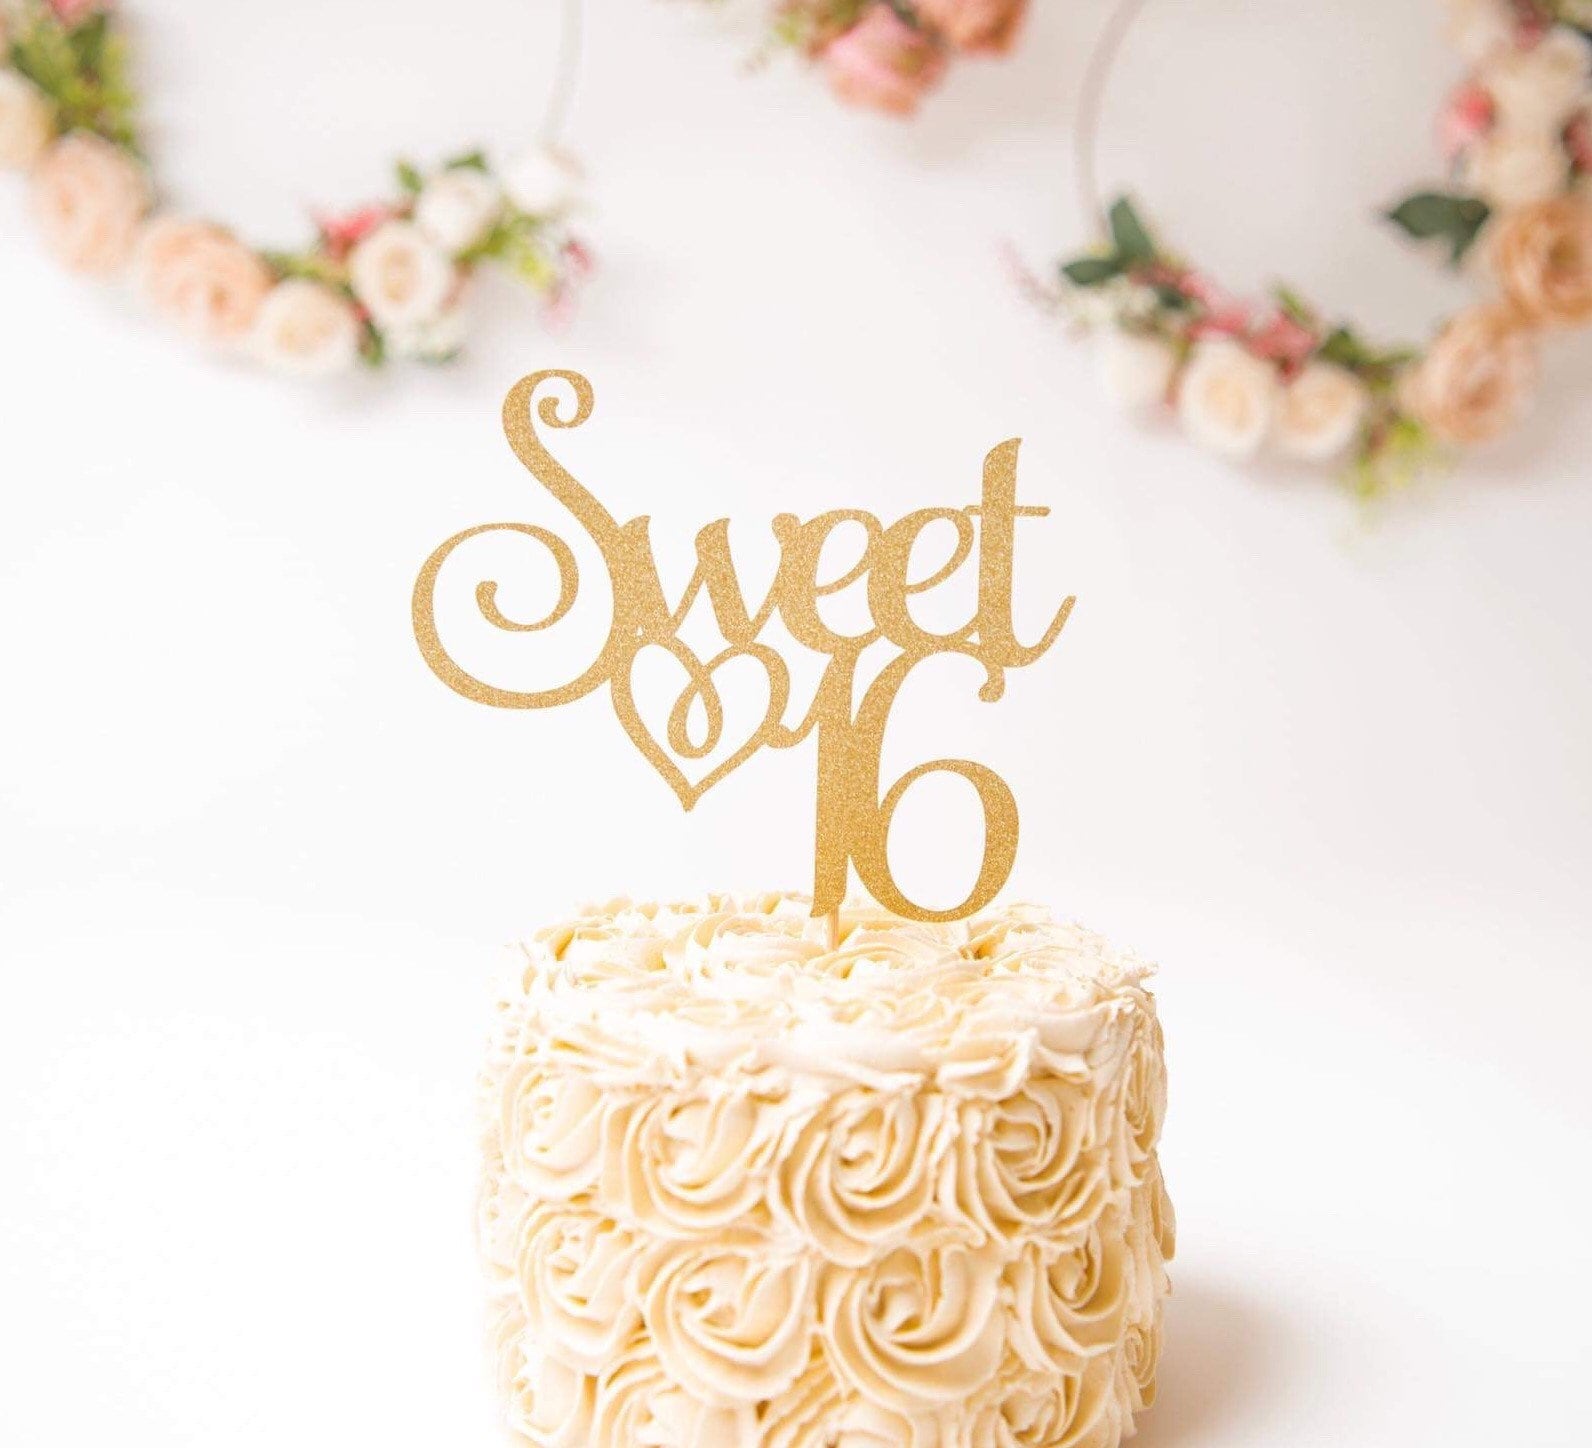 Sweet 16 Cake topper